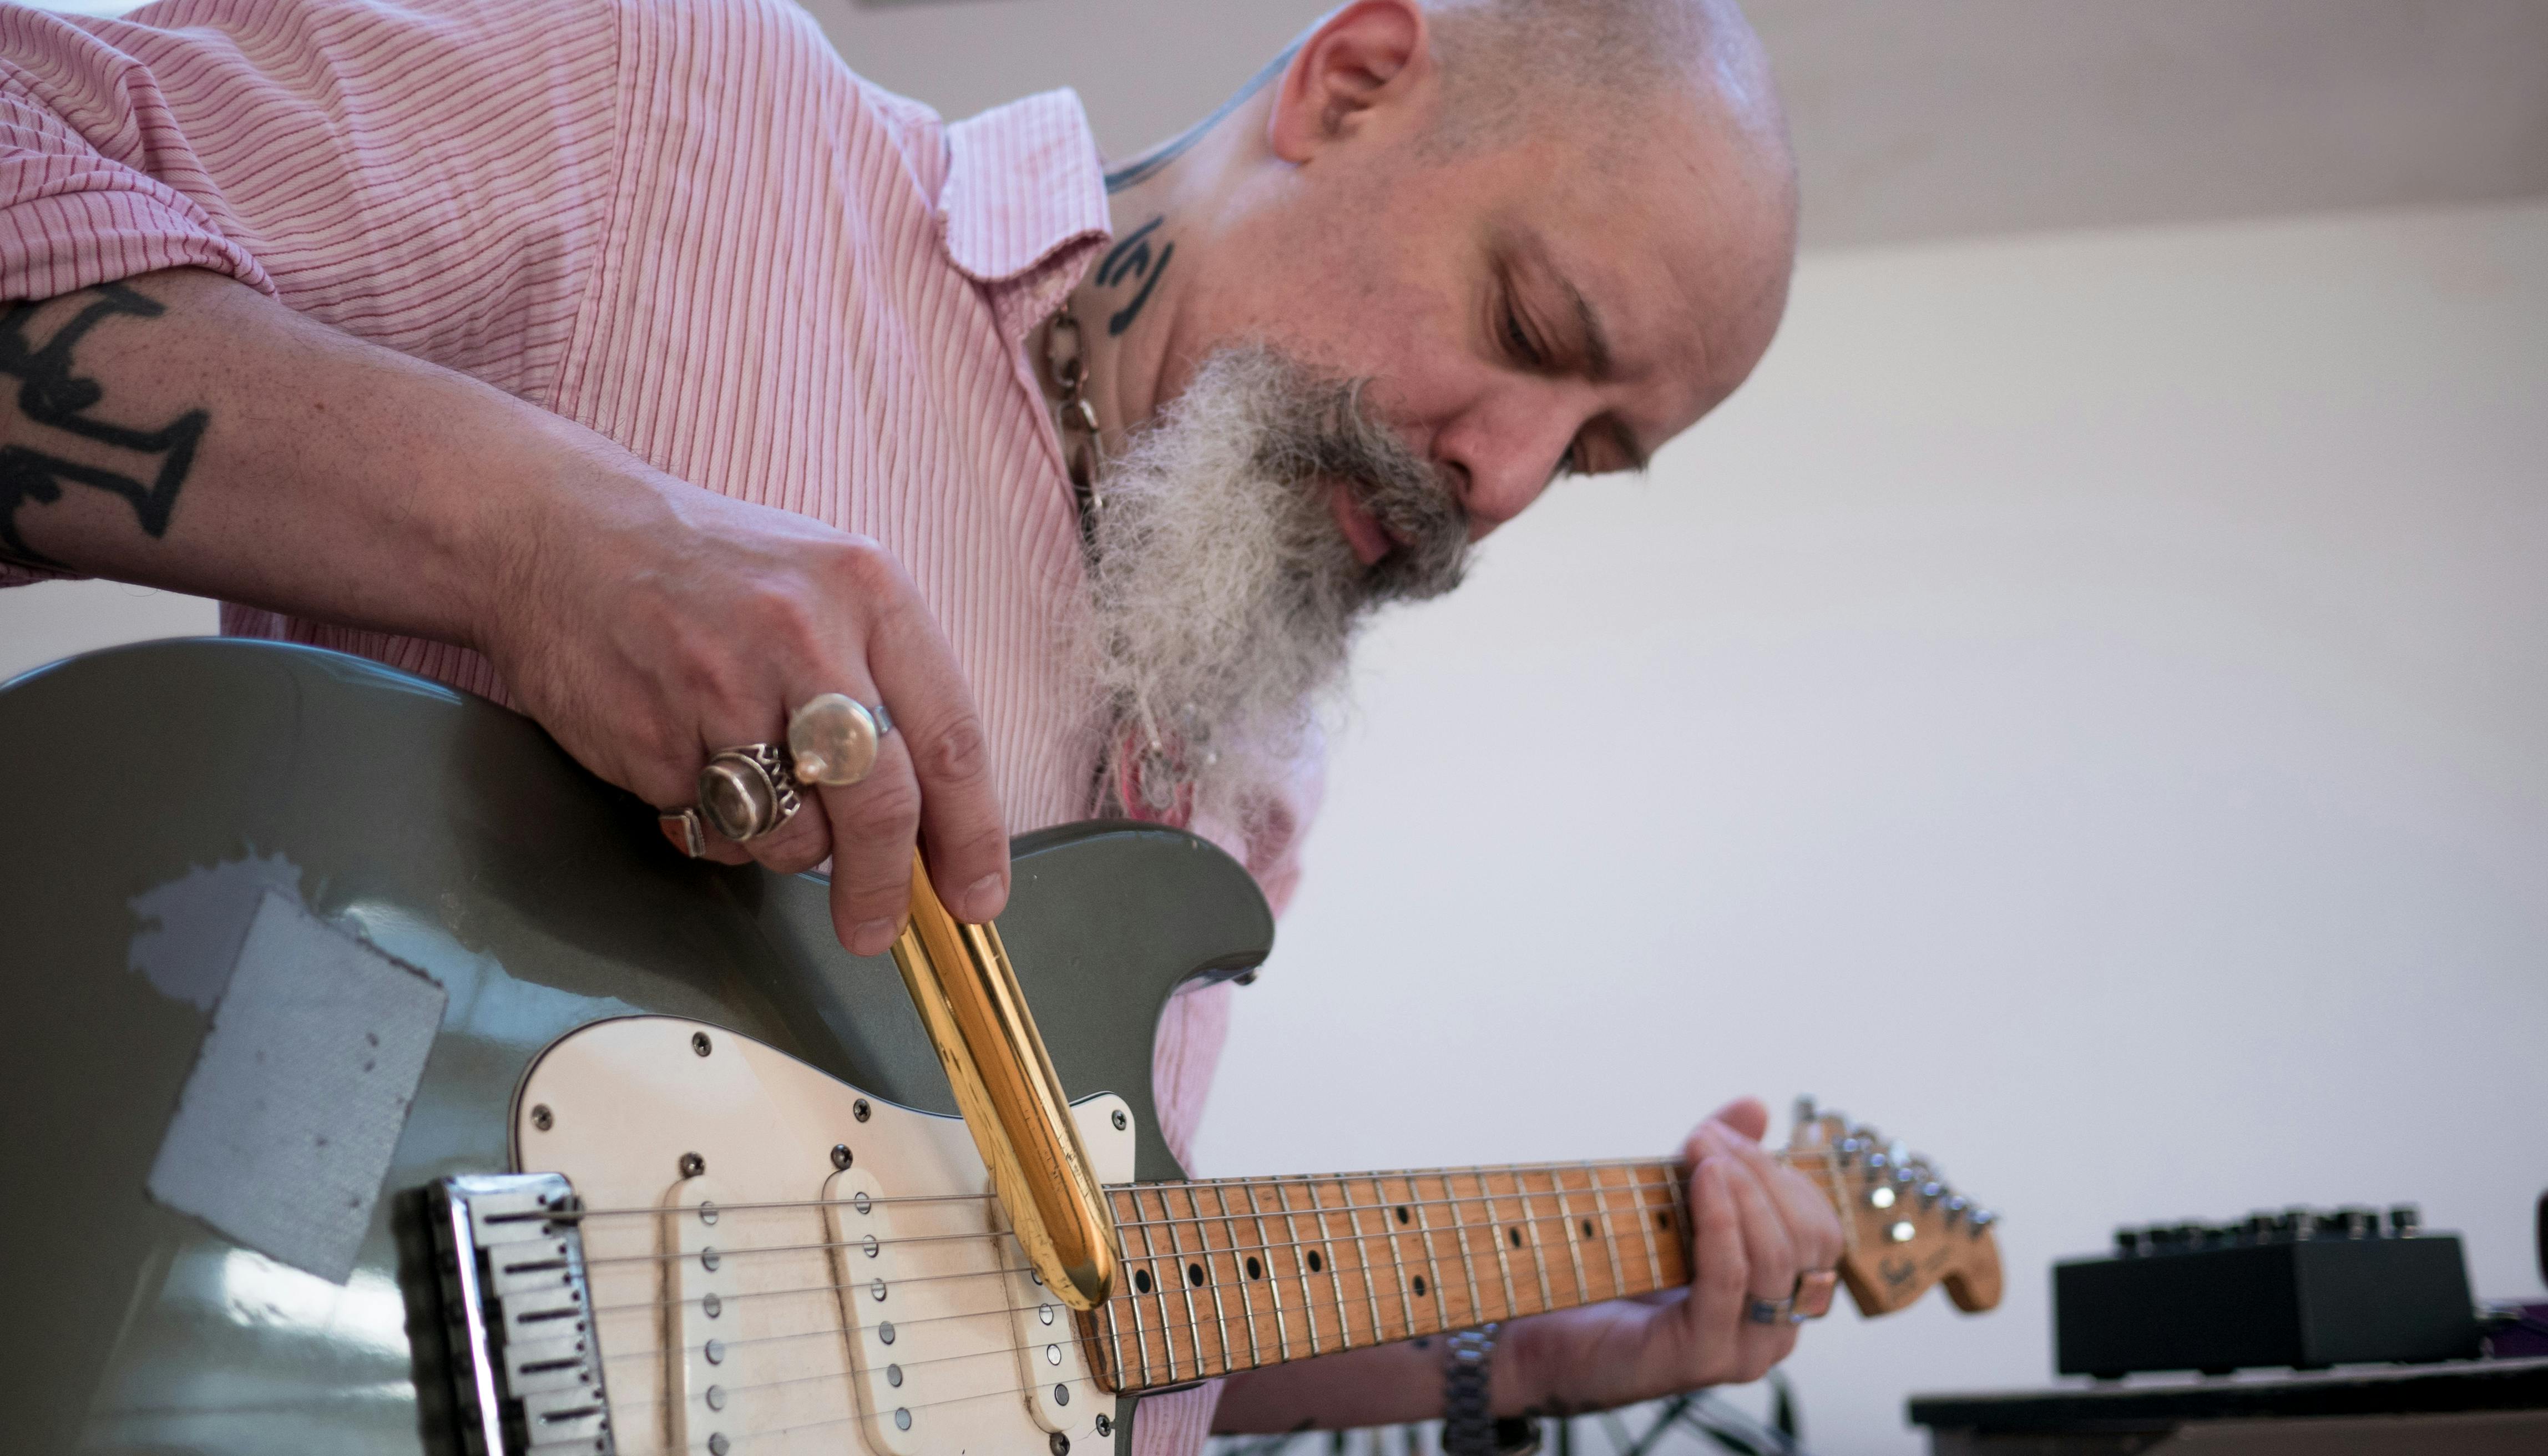 Il musicista Fabrizio Modonese Palumbo mentre suona la chitarra elettrica. Il viso concentrato è incorniciato da una lunga barba bianca; indossa una camicia rosa a righe e numerosi anelli. Su braccia e collo si intravedono dei tatuaggi.